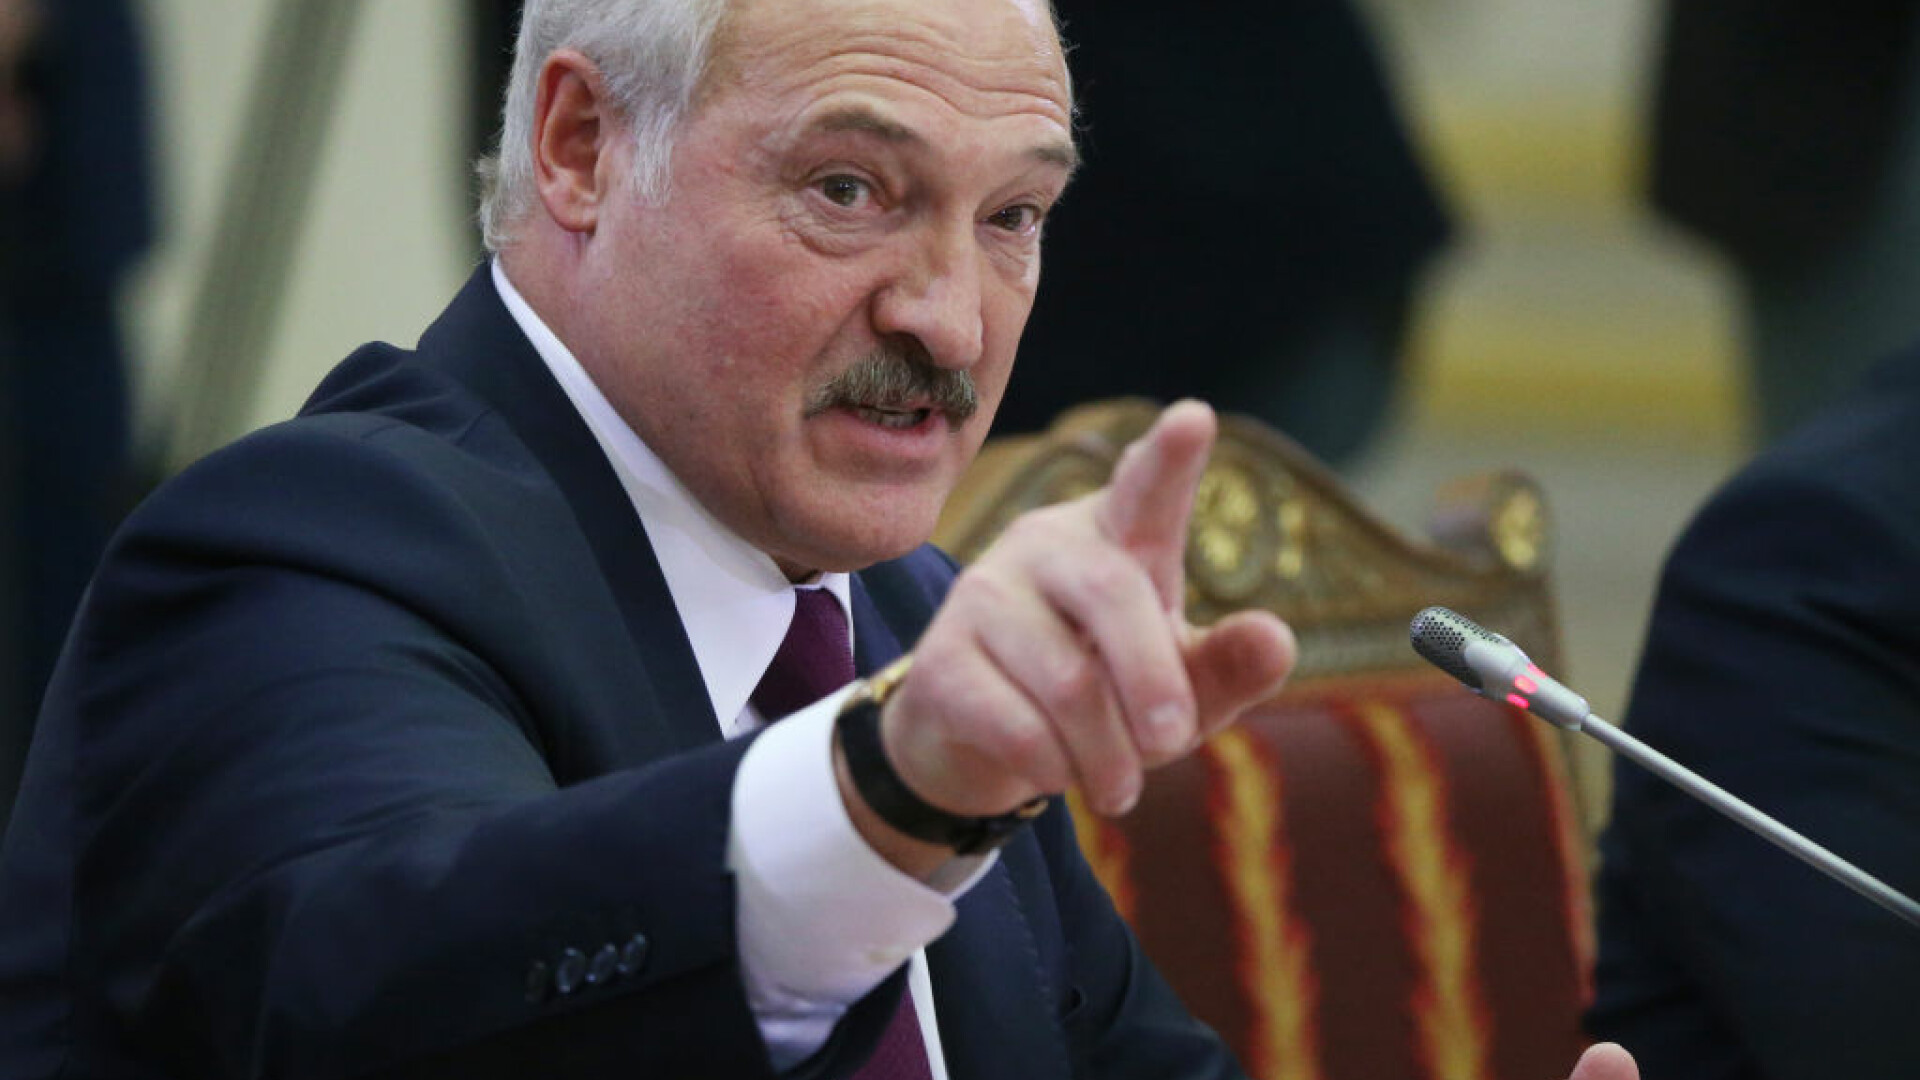 Lukașenko amenință UE. ”Să vedem cui îi e frică! Le vom arăta ce înseamnă sancţiuni”